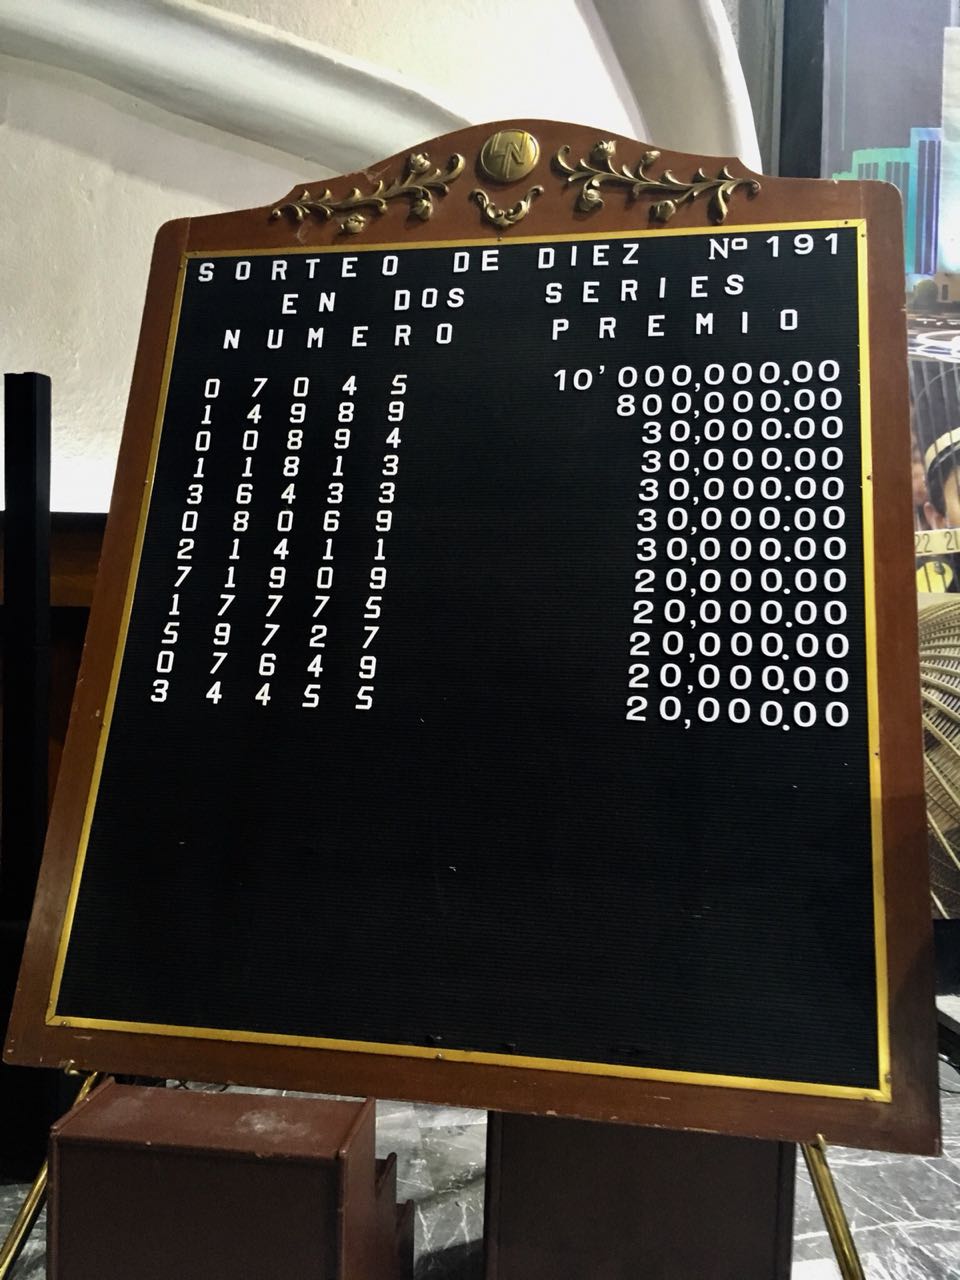 Fotografía del tablero de resultados del Sorteo de diez No. 191.